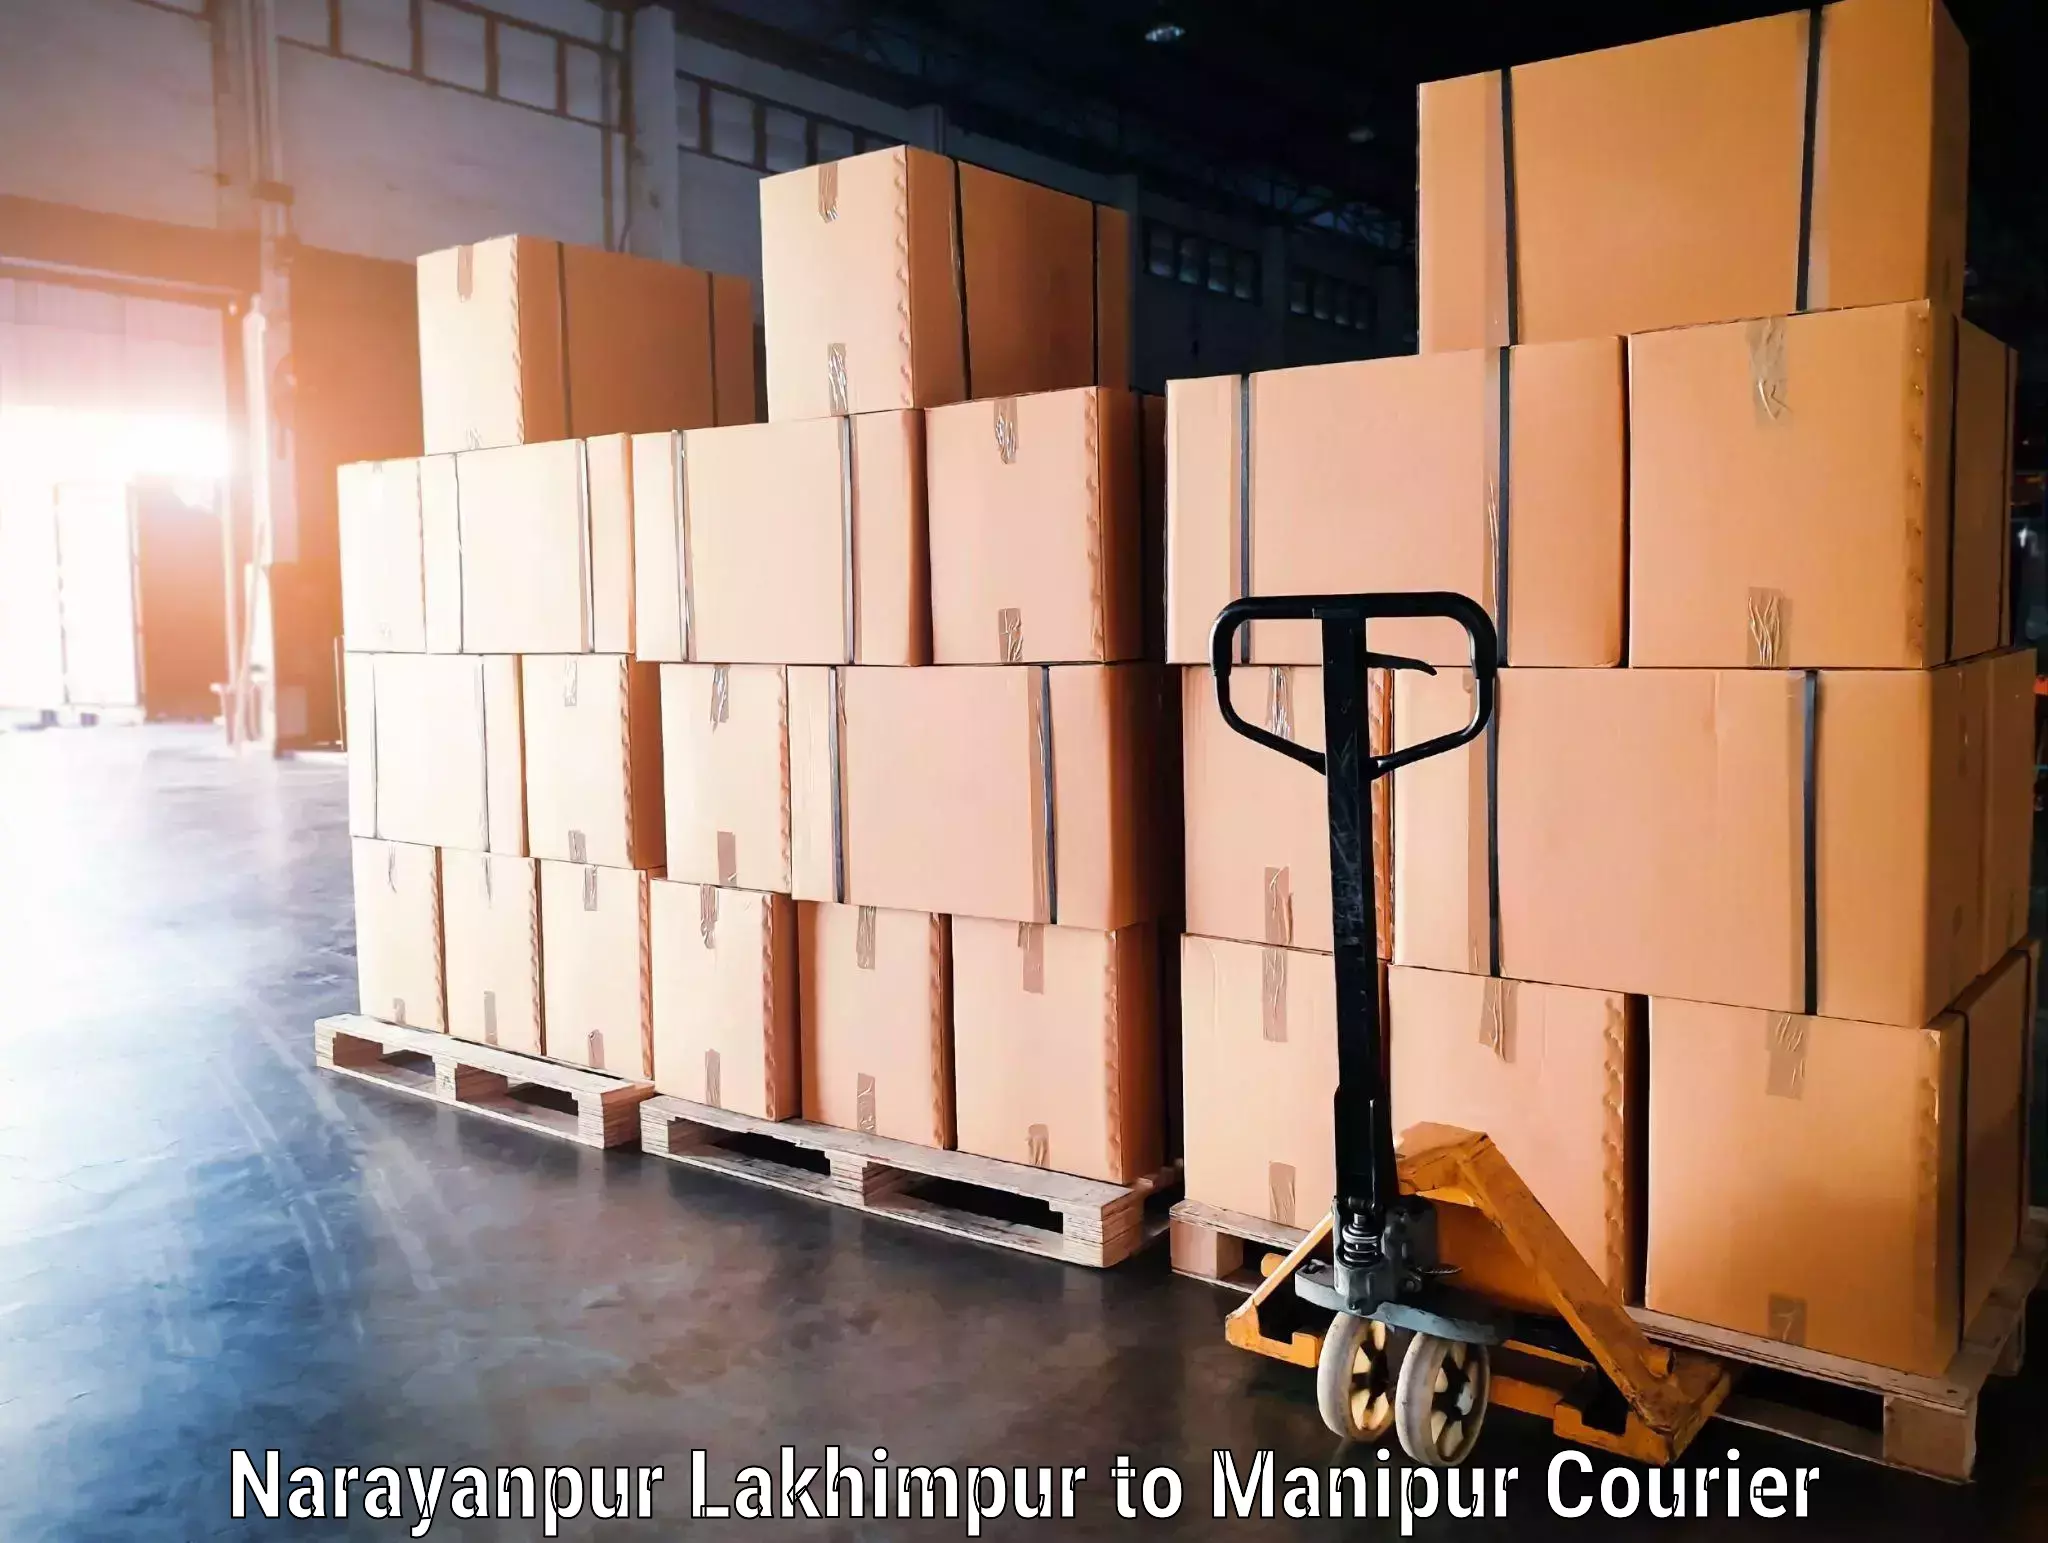 Baggage shipping service Narayanpur Lakhimpur to Tamenglong